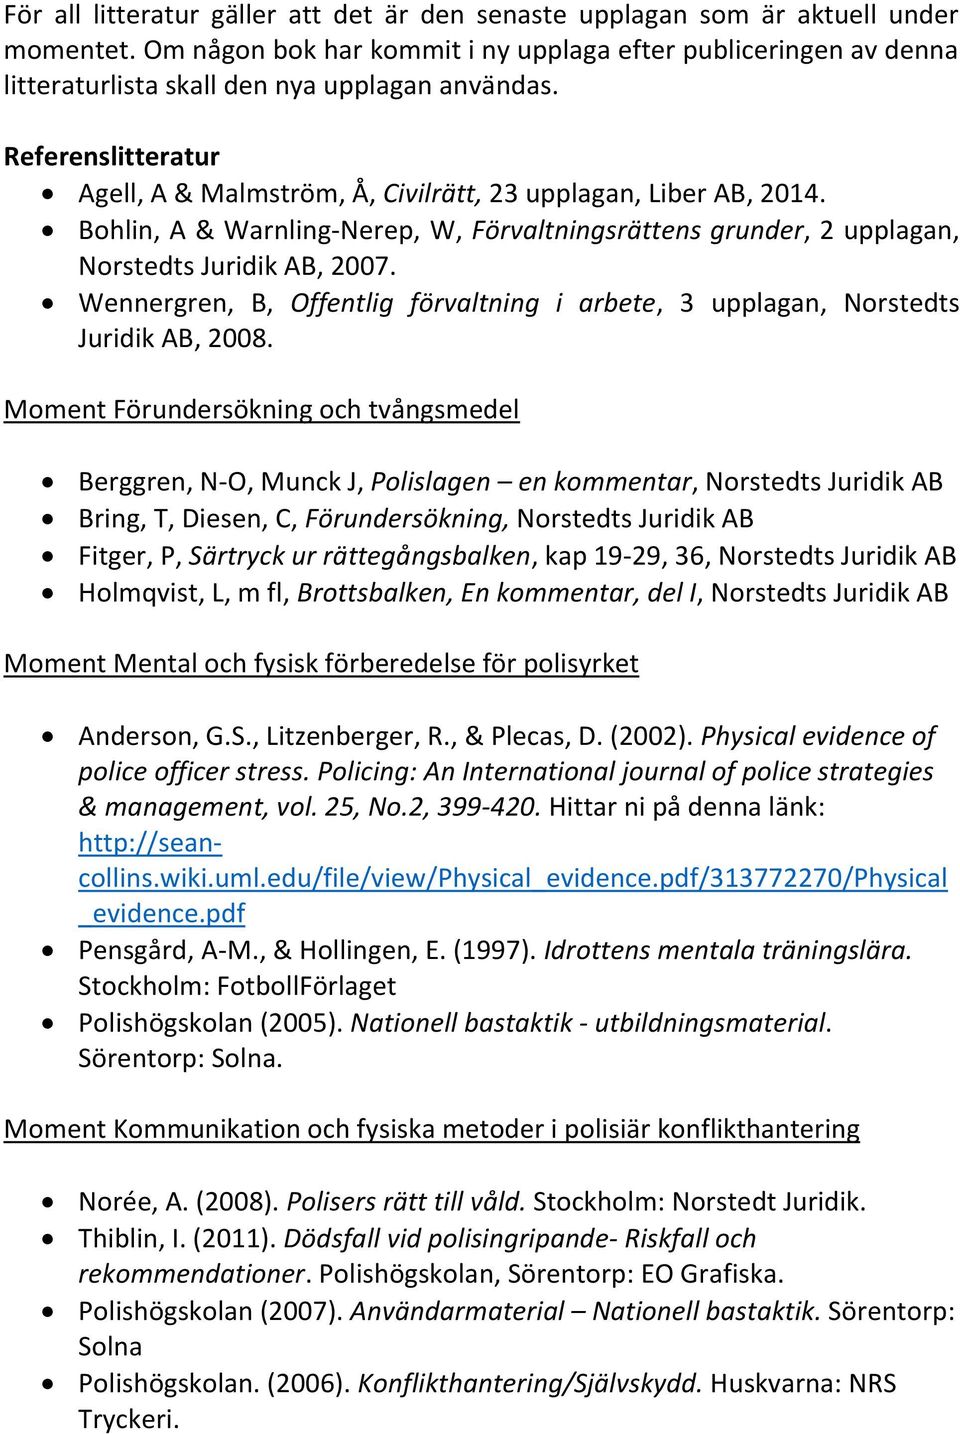 Bohlin, A & Warnling-Nerep, W, Förvaltningsrättens grunder, 2 upplagan, Norstedts Juridik AB, 2007. Wennergren, B, Offentlig förvaltning i arbete, 3 upplagan, Norstedts Juridik AB, 2008.